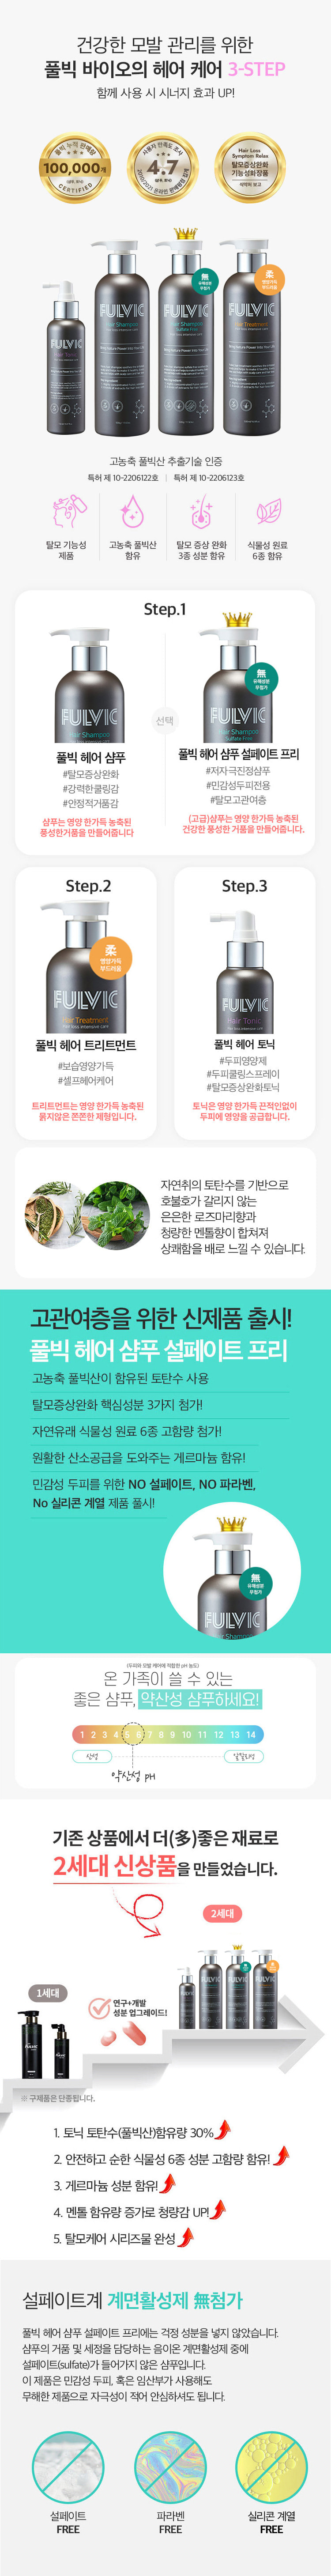 풀빅샴푸 전광렬샴푸 강성식대표 김주희솔깃 풀빅산샴푸 상품효능